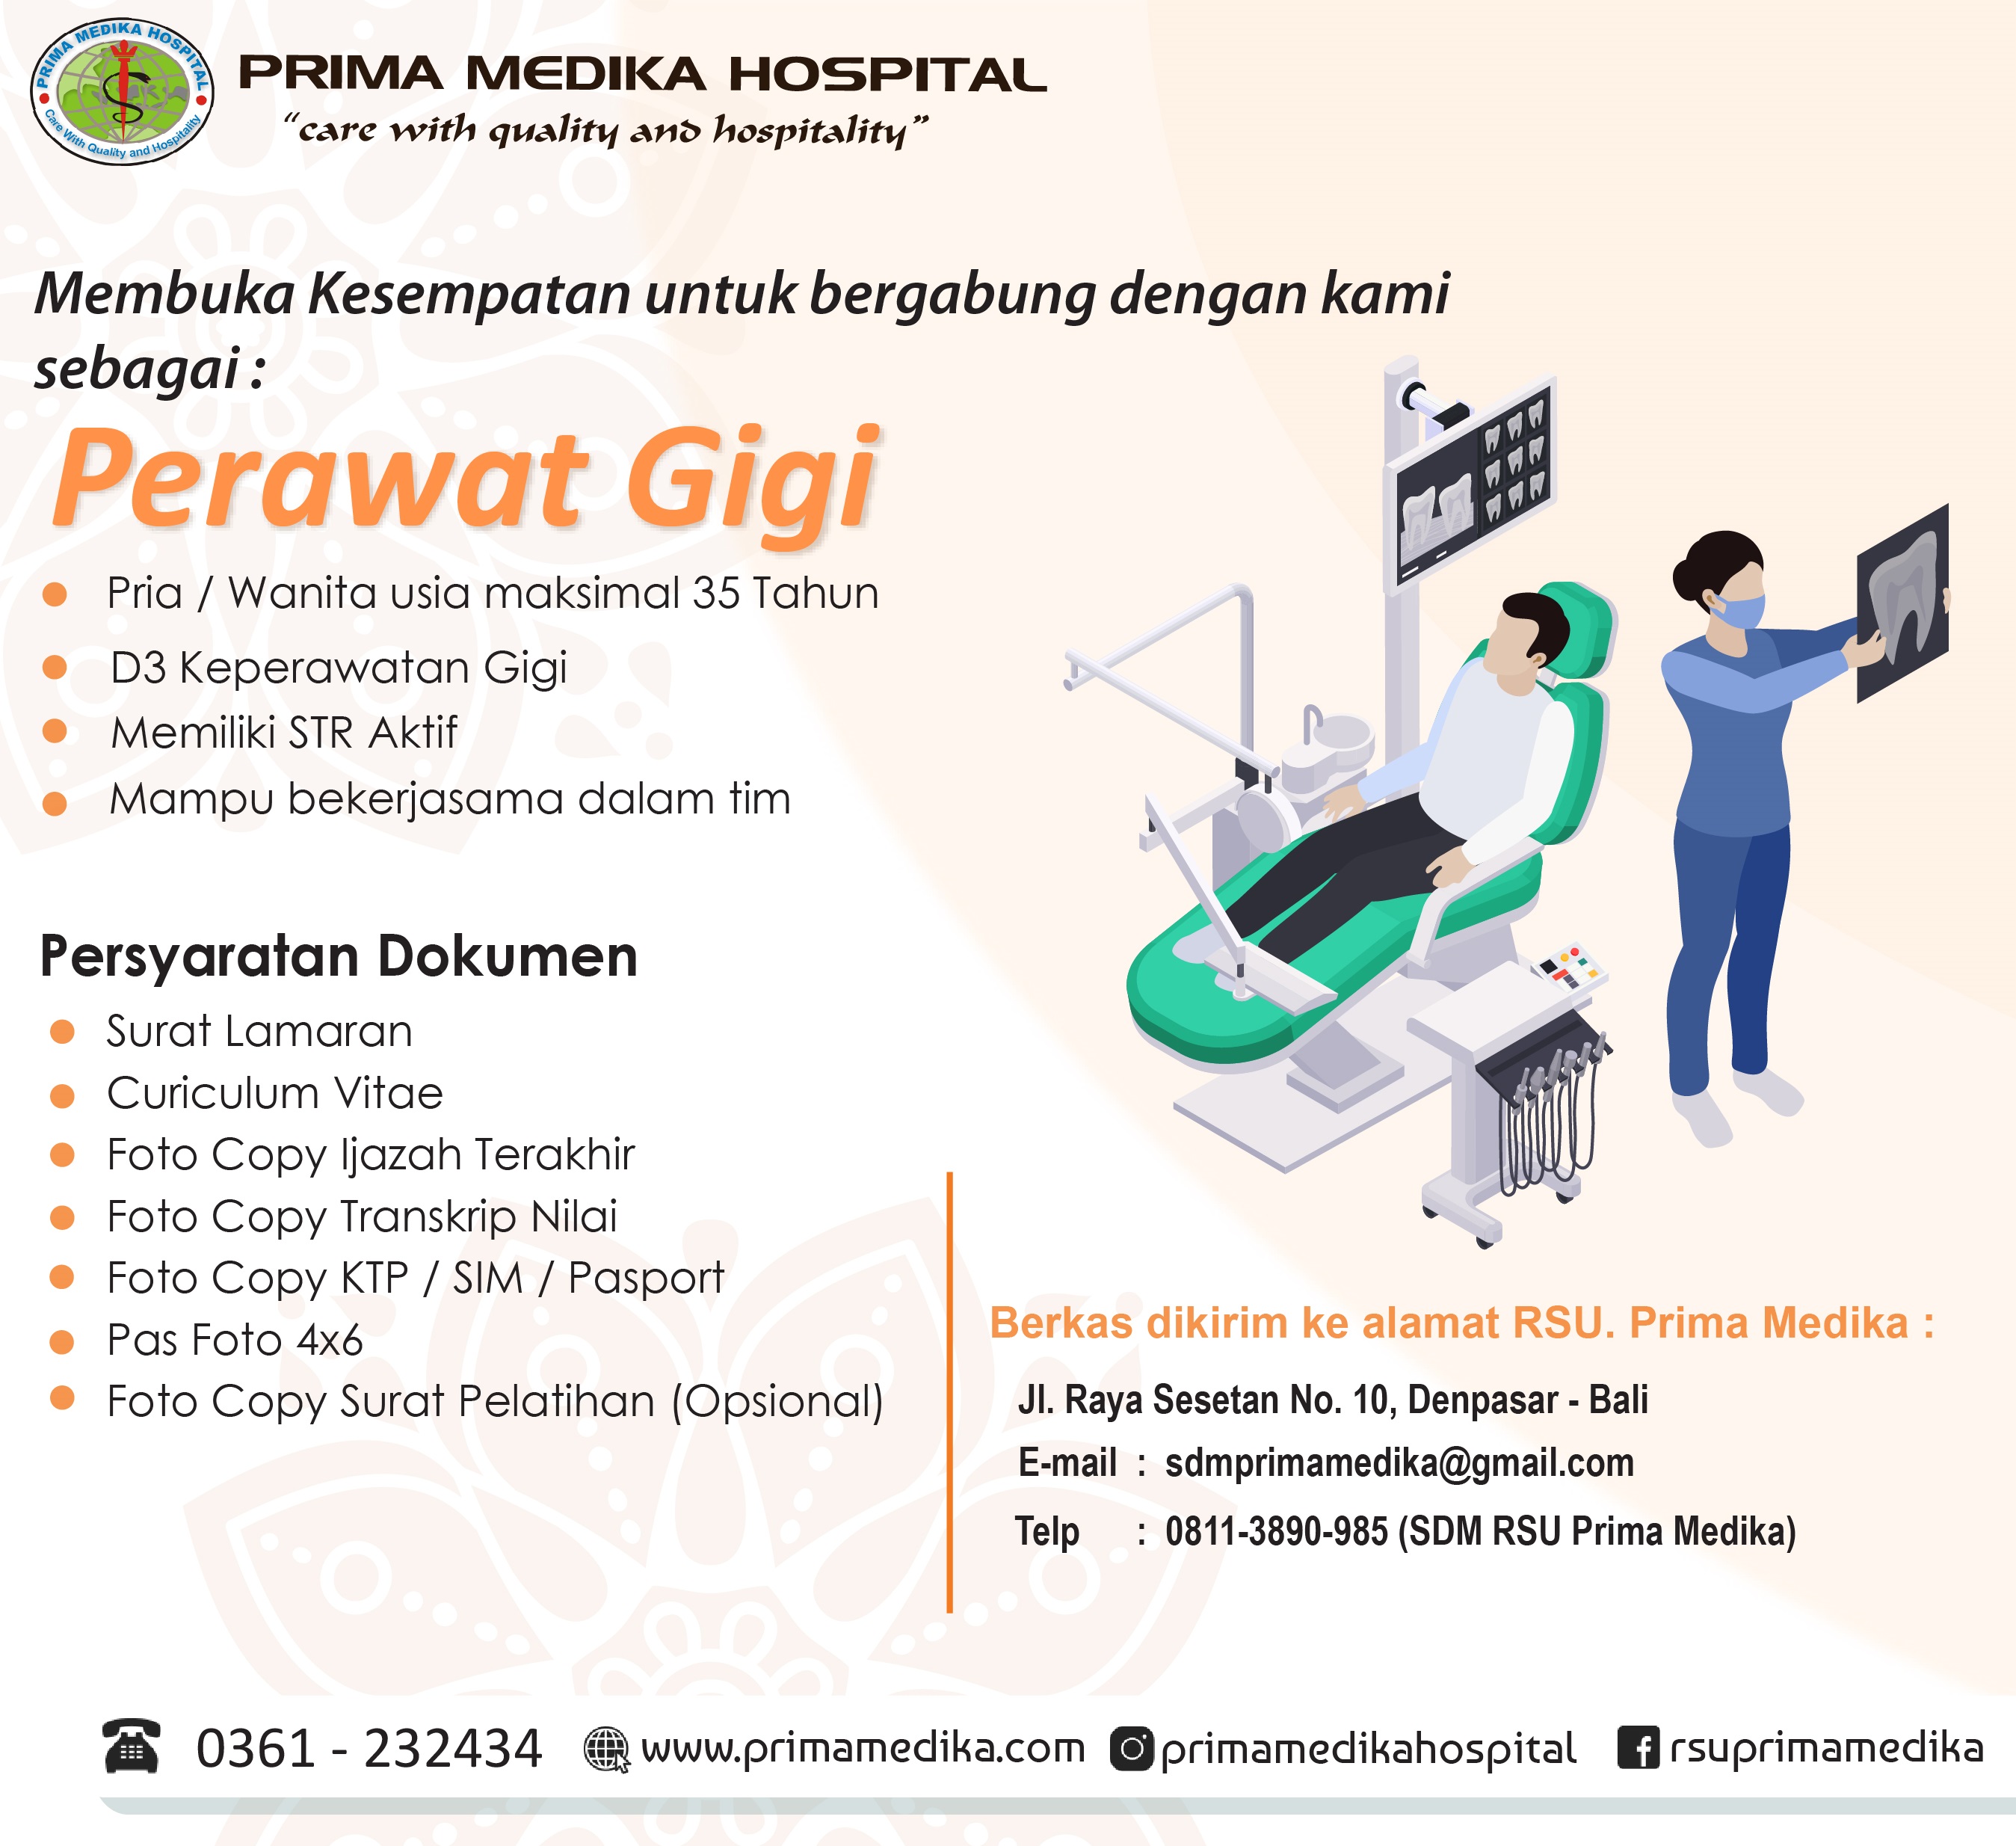 Prima Medika Hospital membuka kesempatan untuk bergabung sebagai :  PERAWAT GIGI